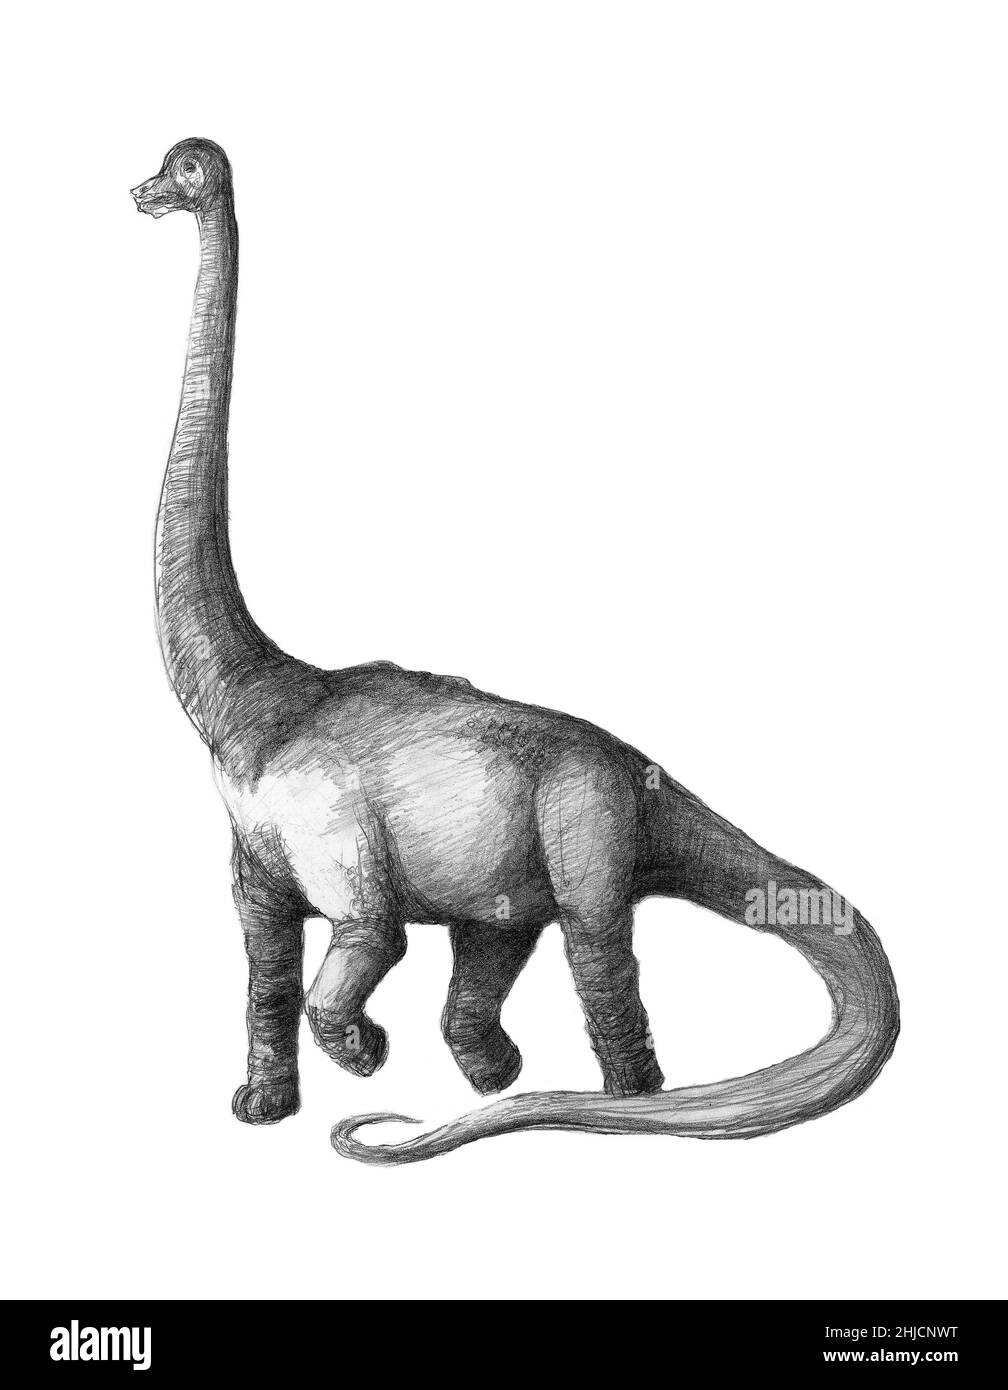 Dinosauro brachiosauro, opere d'arte. Il Brachiosauro era il dinosauro più alto, alto fino a 16 metri. Insolitamente per un dinosauro, le sue gambe anteriori erano più lunghe delle sue zampe posteriori. Si pensa che si nutriva delle alte foglie di alberi, come fanno oggi le giraffe. Fossili di Brachiosauro sono stati trovati in Nord America e in Africa. Visse nel tardo periodo giurassico, tra i 155 e i 145 milioni di anni fa. Si pensa che Brachiosauro vivesse in mandrie, anche se un adulto pienamente cresciuto avrebbe avuto poco da temere dai predatori. Foto Stock